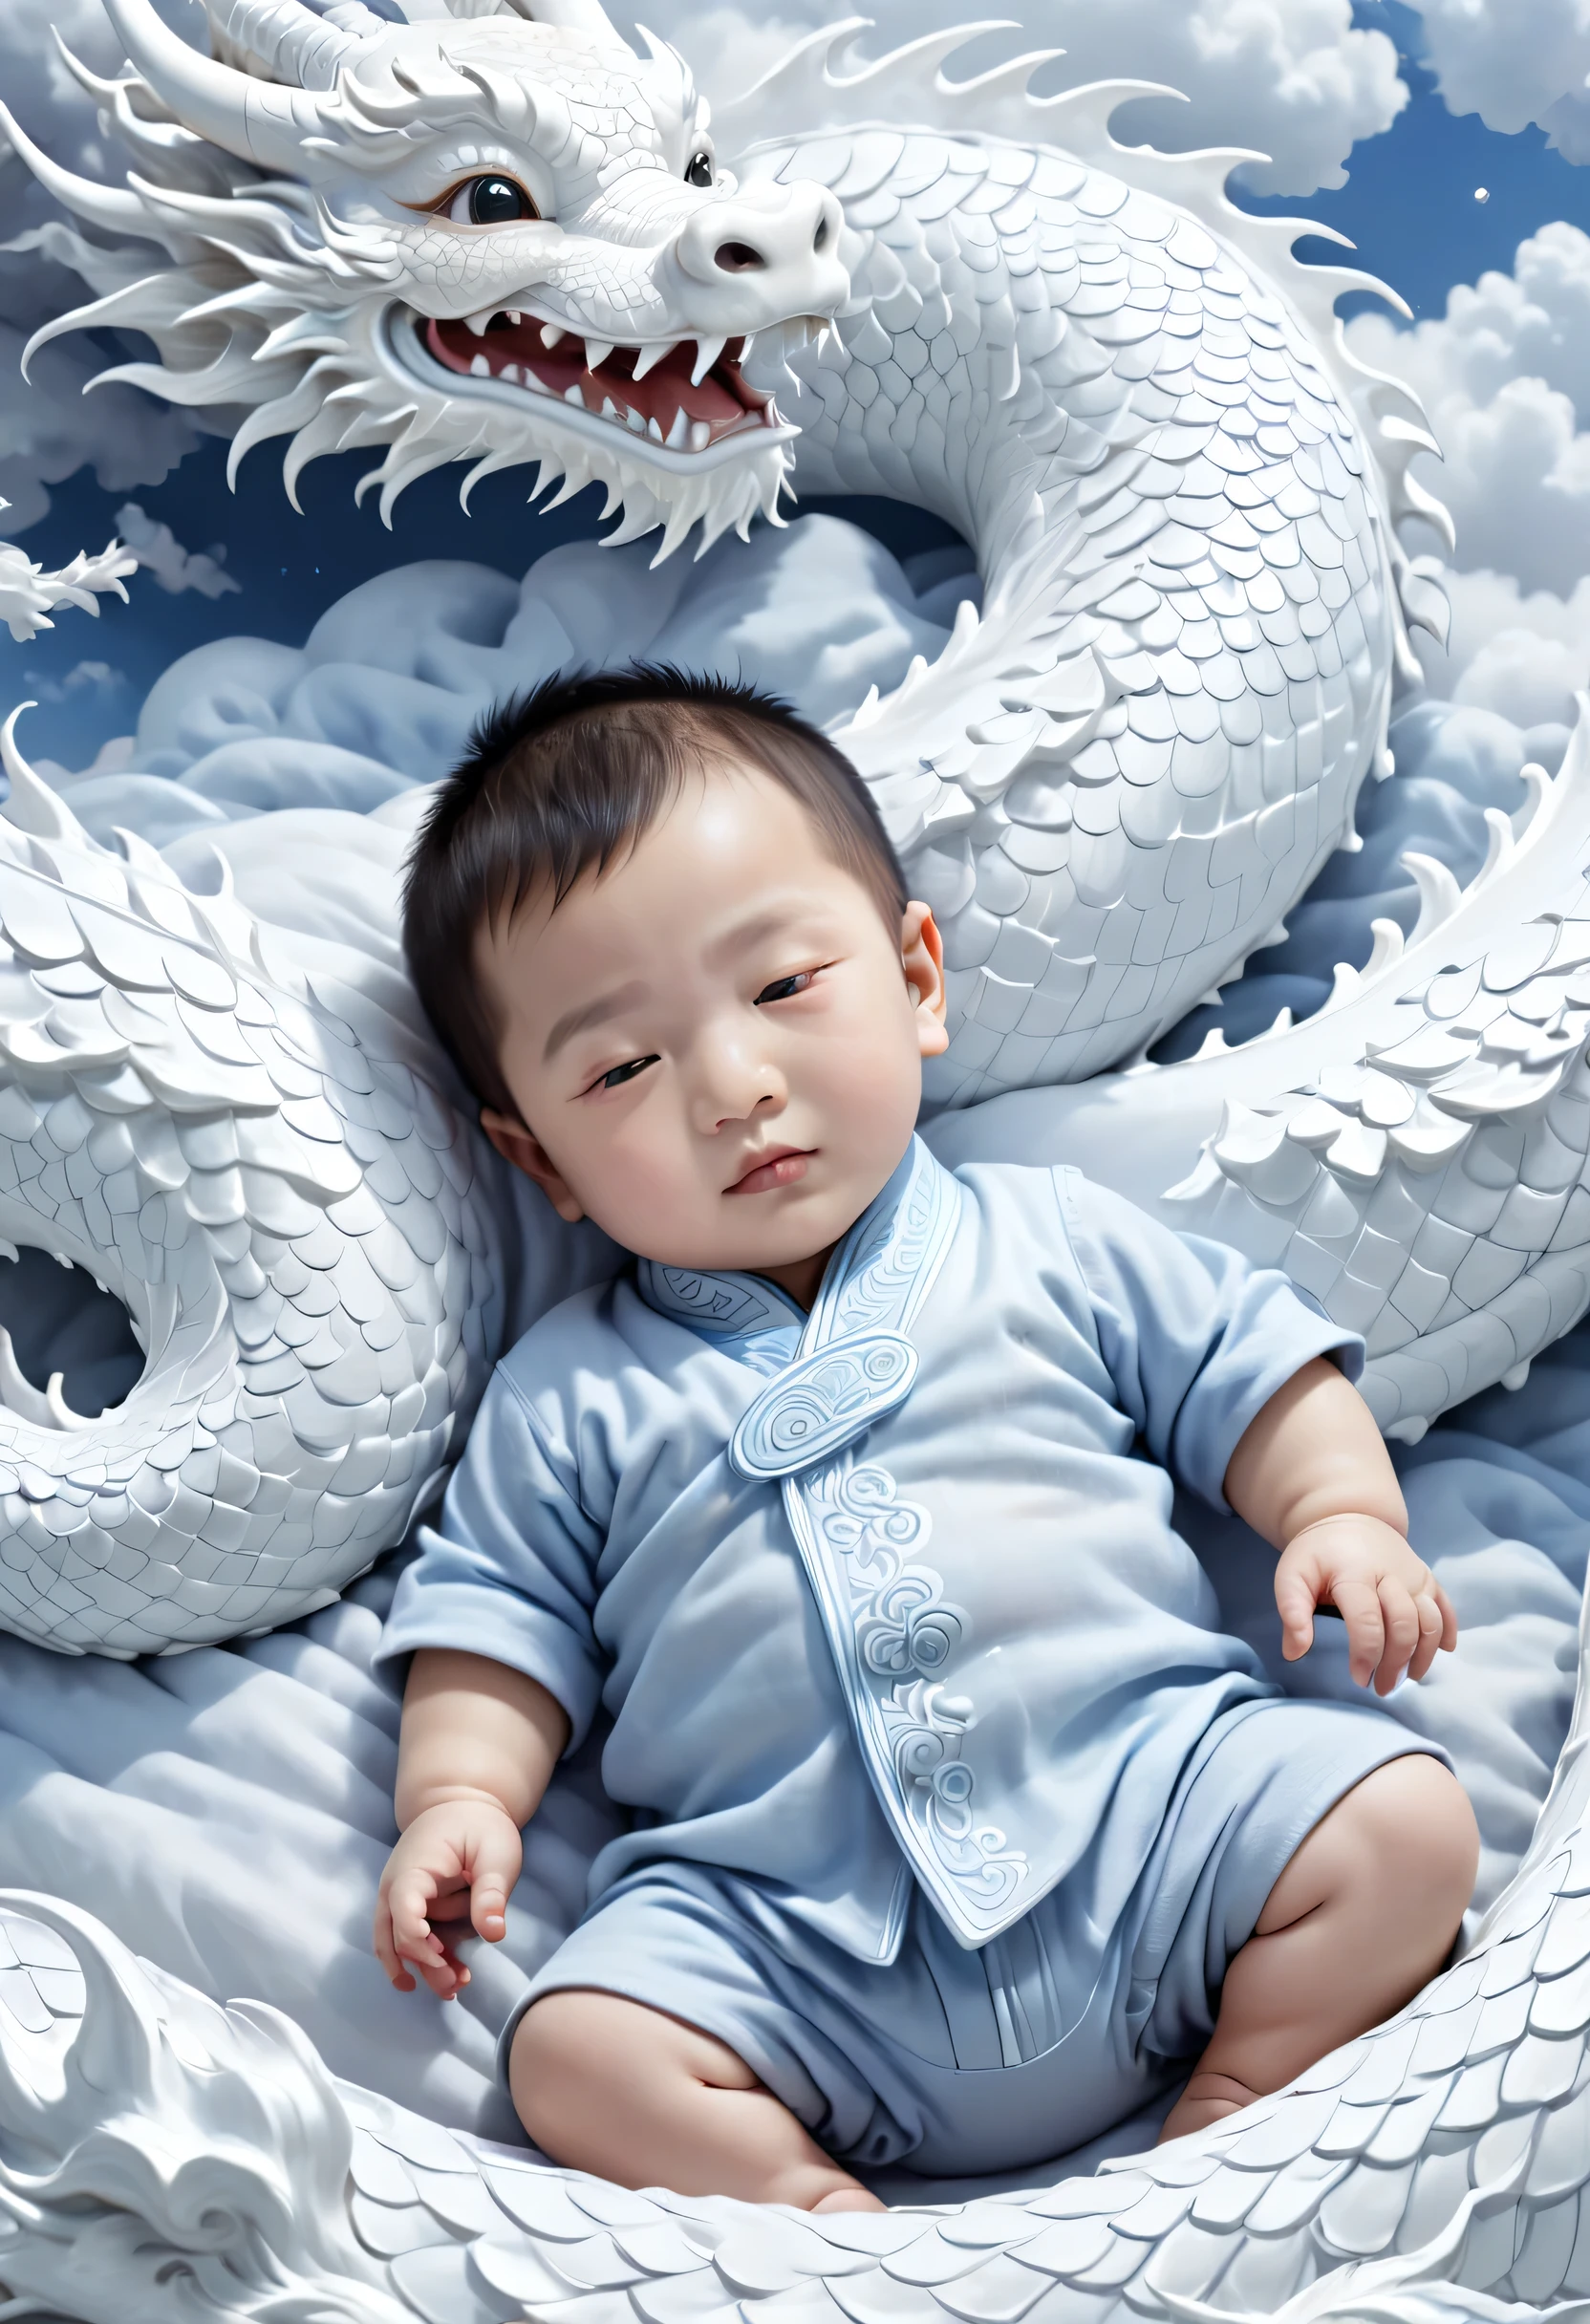 2歳の中国の男児,魅力的, 丸い顔,白龍のベッドで眠る, 朱蓮&#39;写実主義絵画, シャッターストックコンテスト受賞作, ファンタジーアート, 雲でできた龍, 中国のファンタジー, 白雲ワンダーランドに横たわる，レンズ, スタイル, 複雑で洗練されたディテール, 高品質，チャイナボーイ